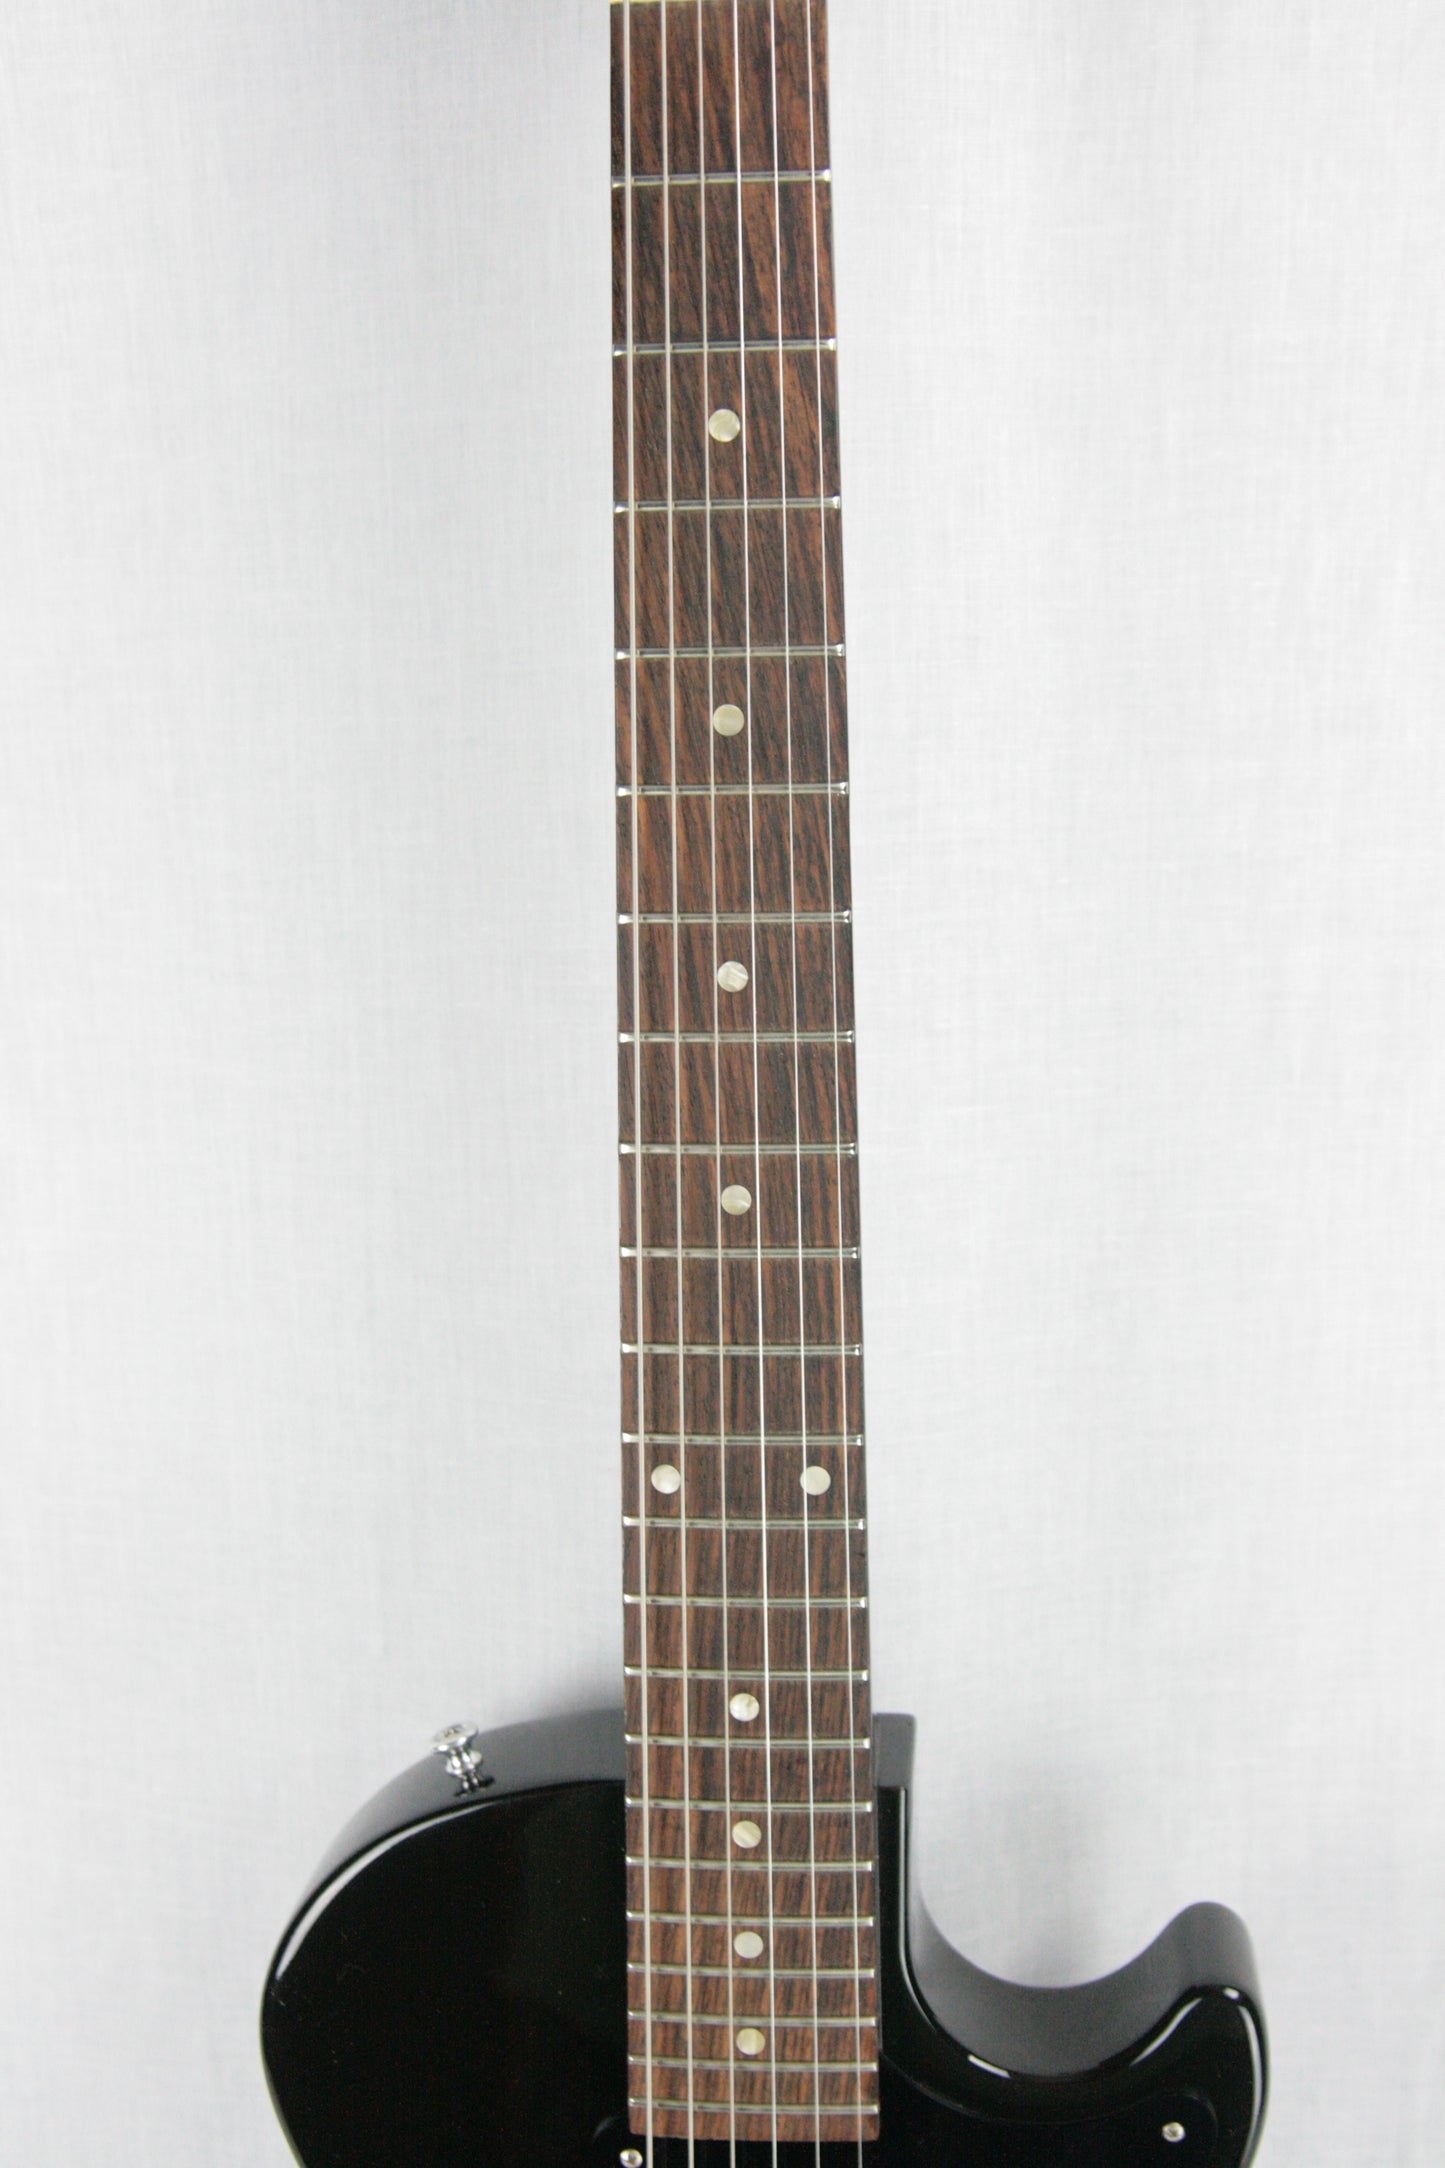 c. 2006 Gibson Billie Joe Armstrong Les Paul Jr. Sunburst! LP Junior Signature Model P90 Vintage